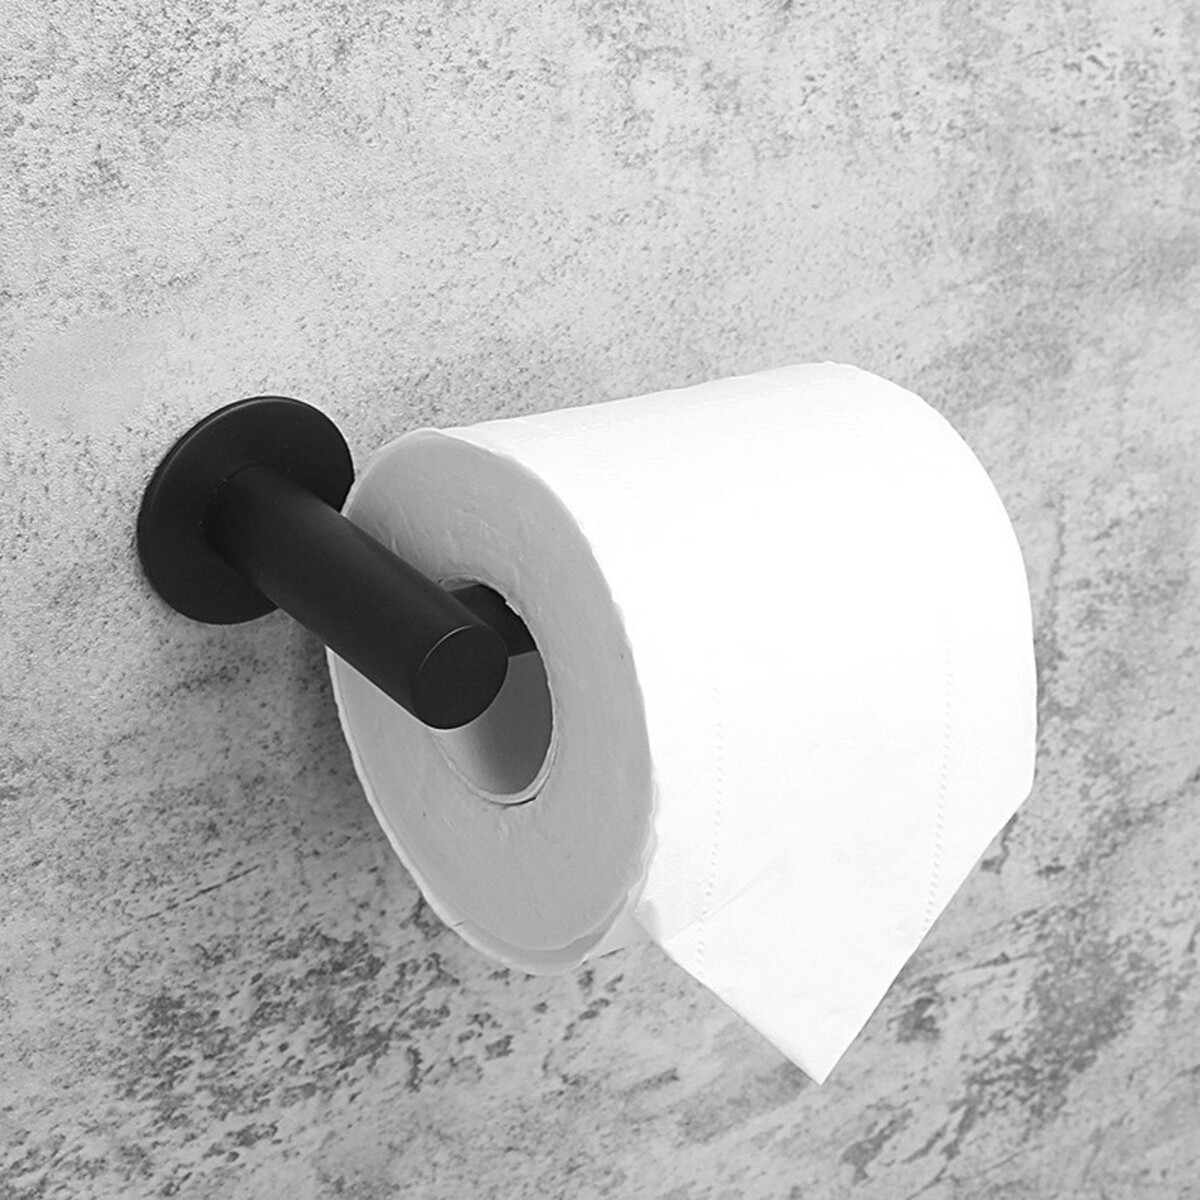 Держатель для туалетной бумаги штольц stölz, 16,2×2,5×9,5 см, нержавеющая сталь, цвет черный держатель кухонный для крышек сковород тарелок нержавеющая сталь серый